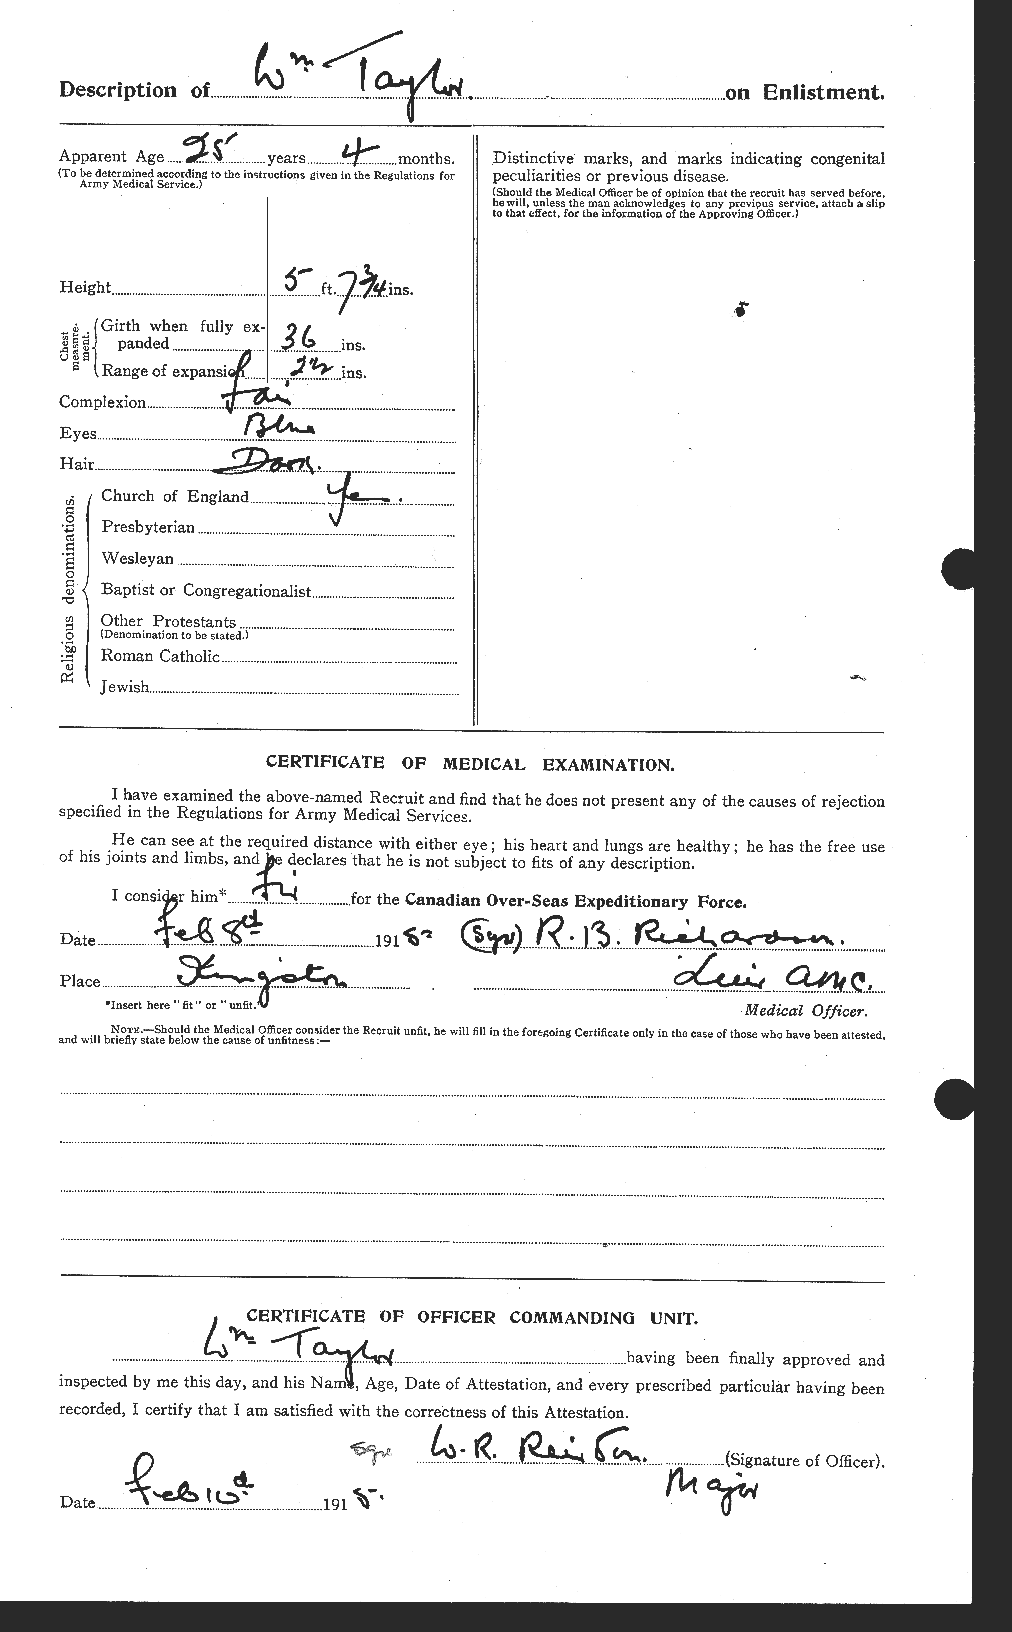 Dossiers du Personnel de la Première Guerre mondiale - CEC 628153b